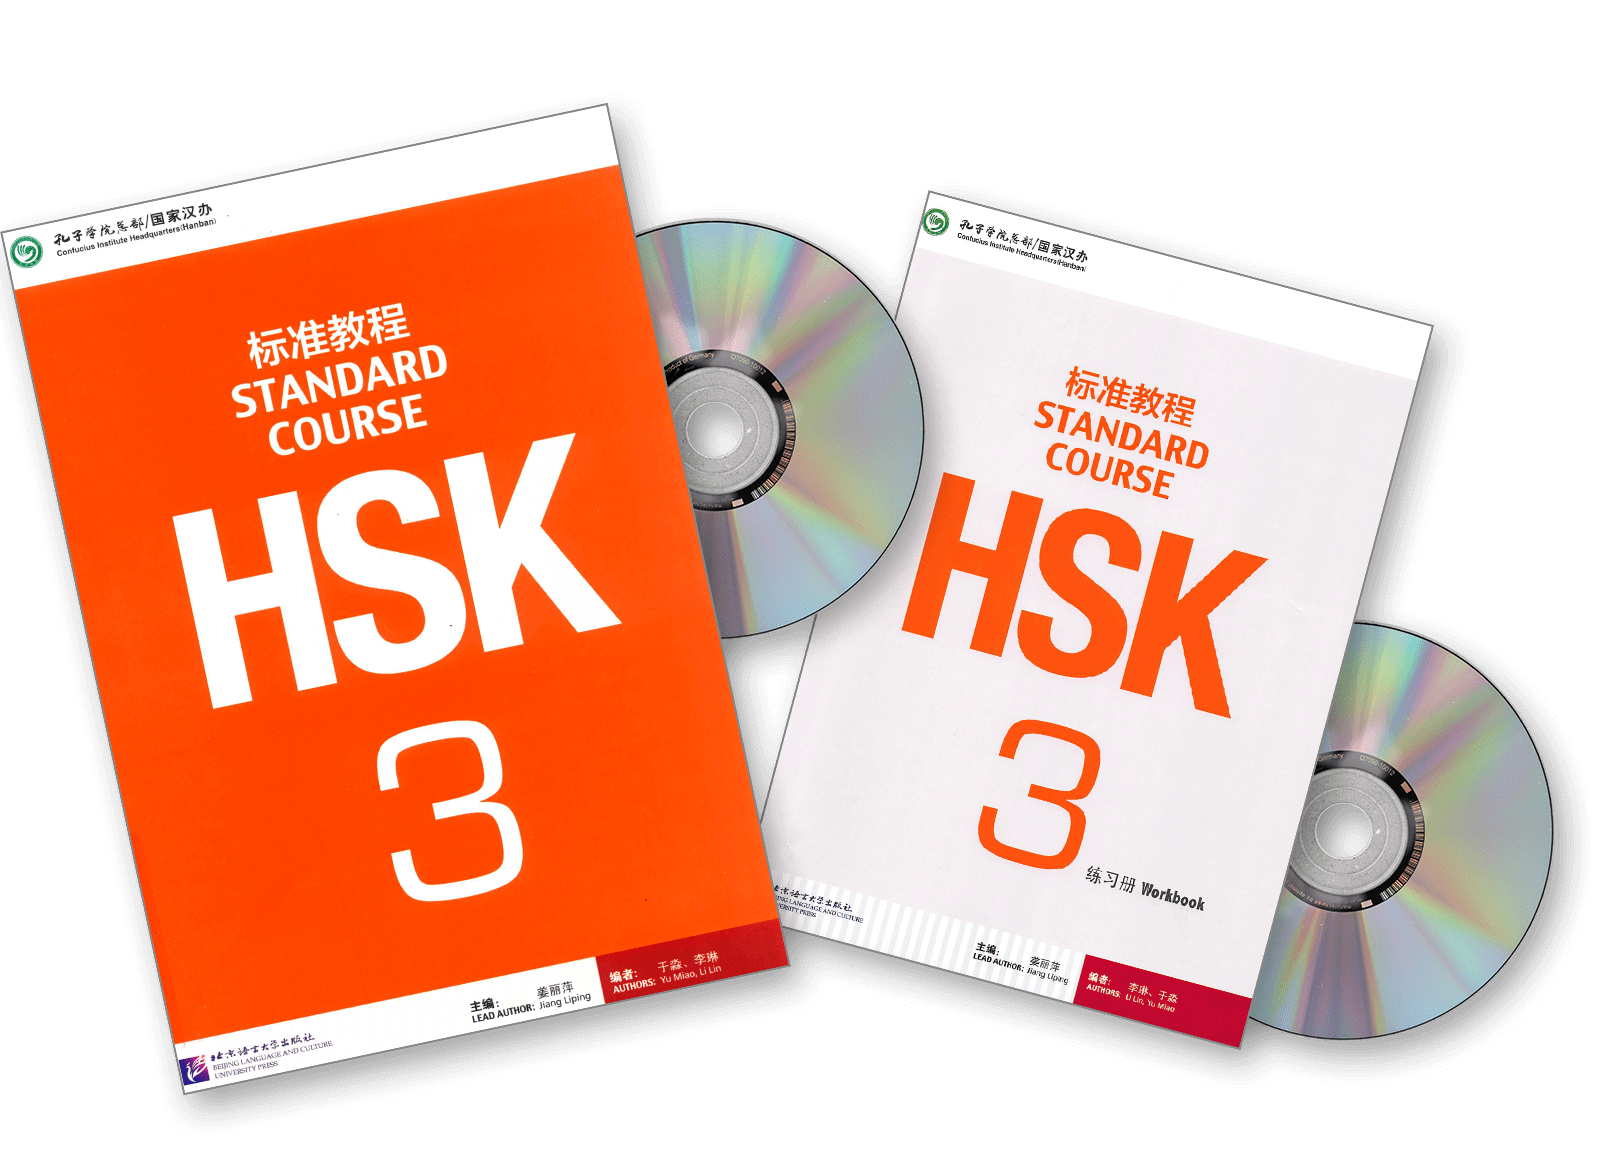 Hsk1 Standard course pdf. HSK 3 Standard course. Standard course HSK 3 учебник. HSK Standard course 3 Workbook. Wordwall hsk